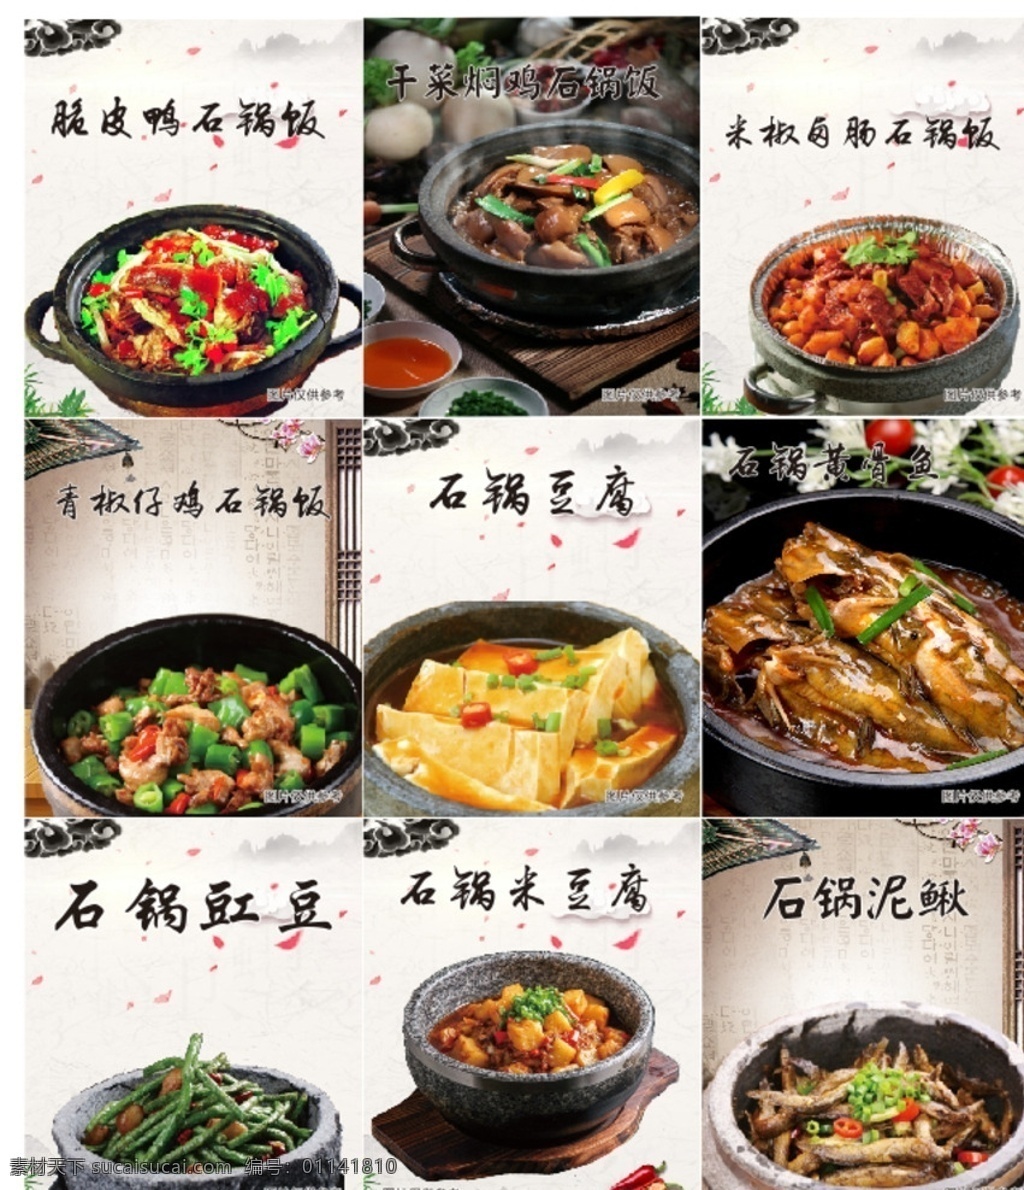 石锅拌饭海报 餐饮美食 传统美食 石锅拌饭 海报 菜品 套餐 美食